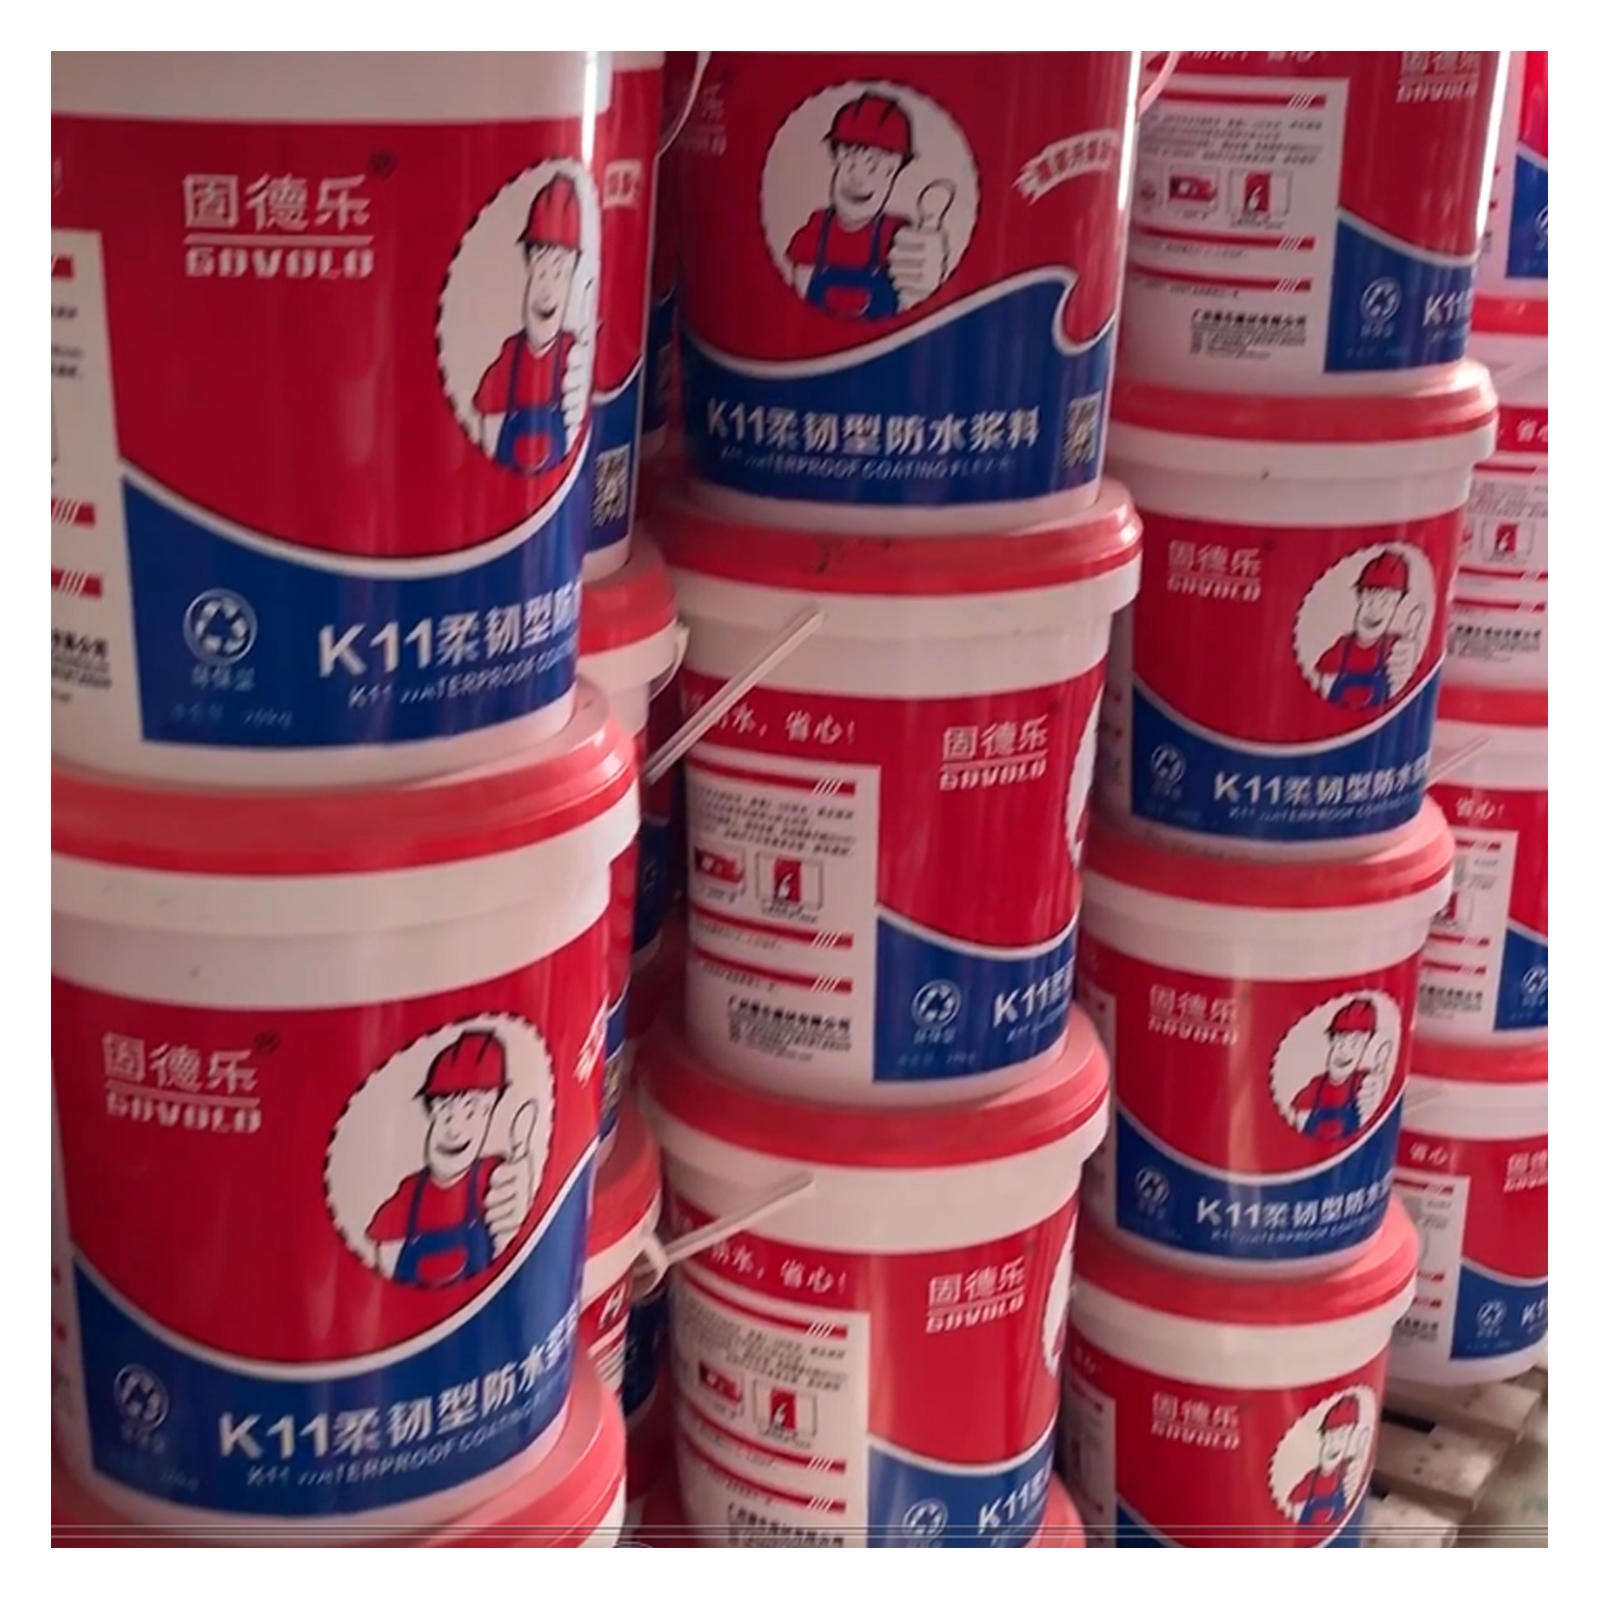 固德乐K11柔韧型防水涂料 卫生间地下室专用材料 厂家直销